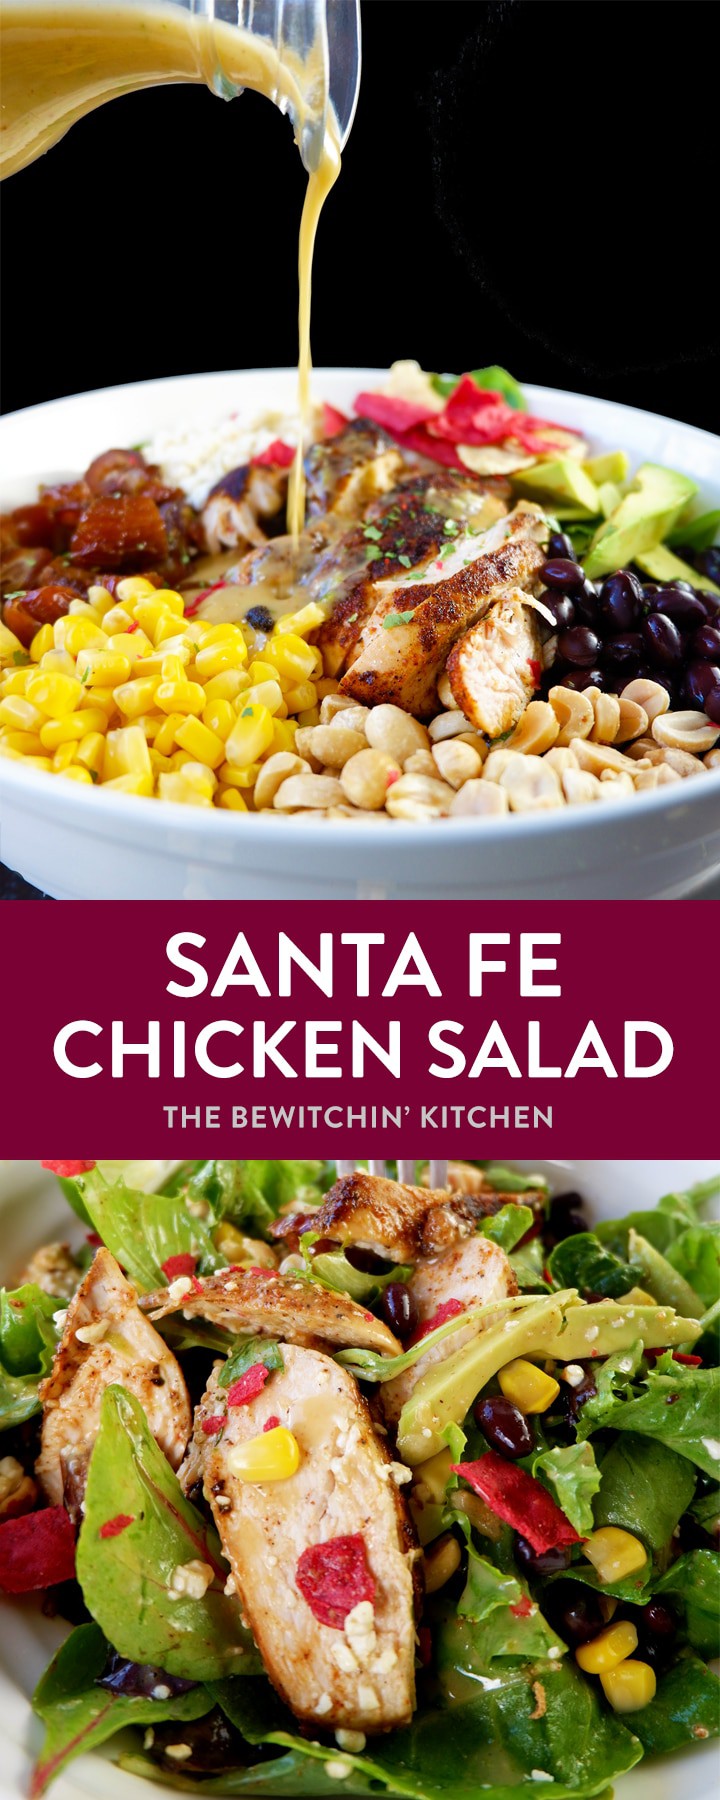 Santa Fe Chicken Salad | The Bewitchin' Kitchen